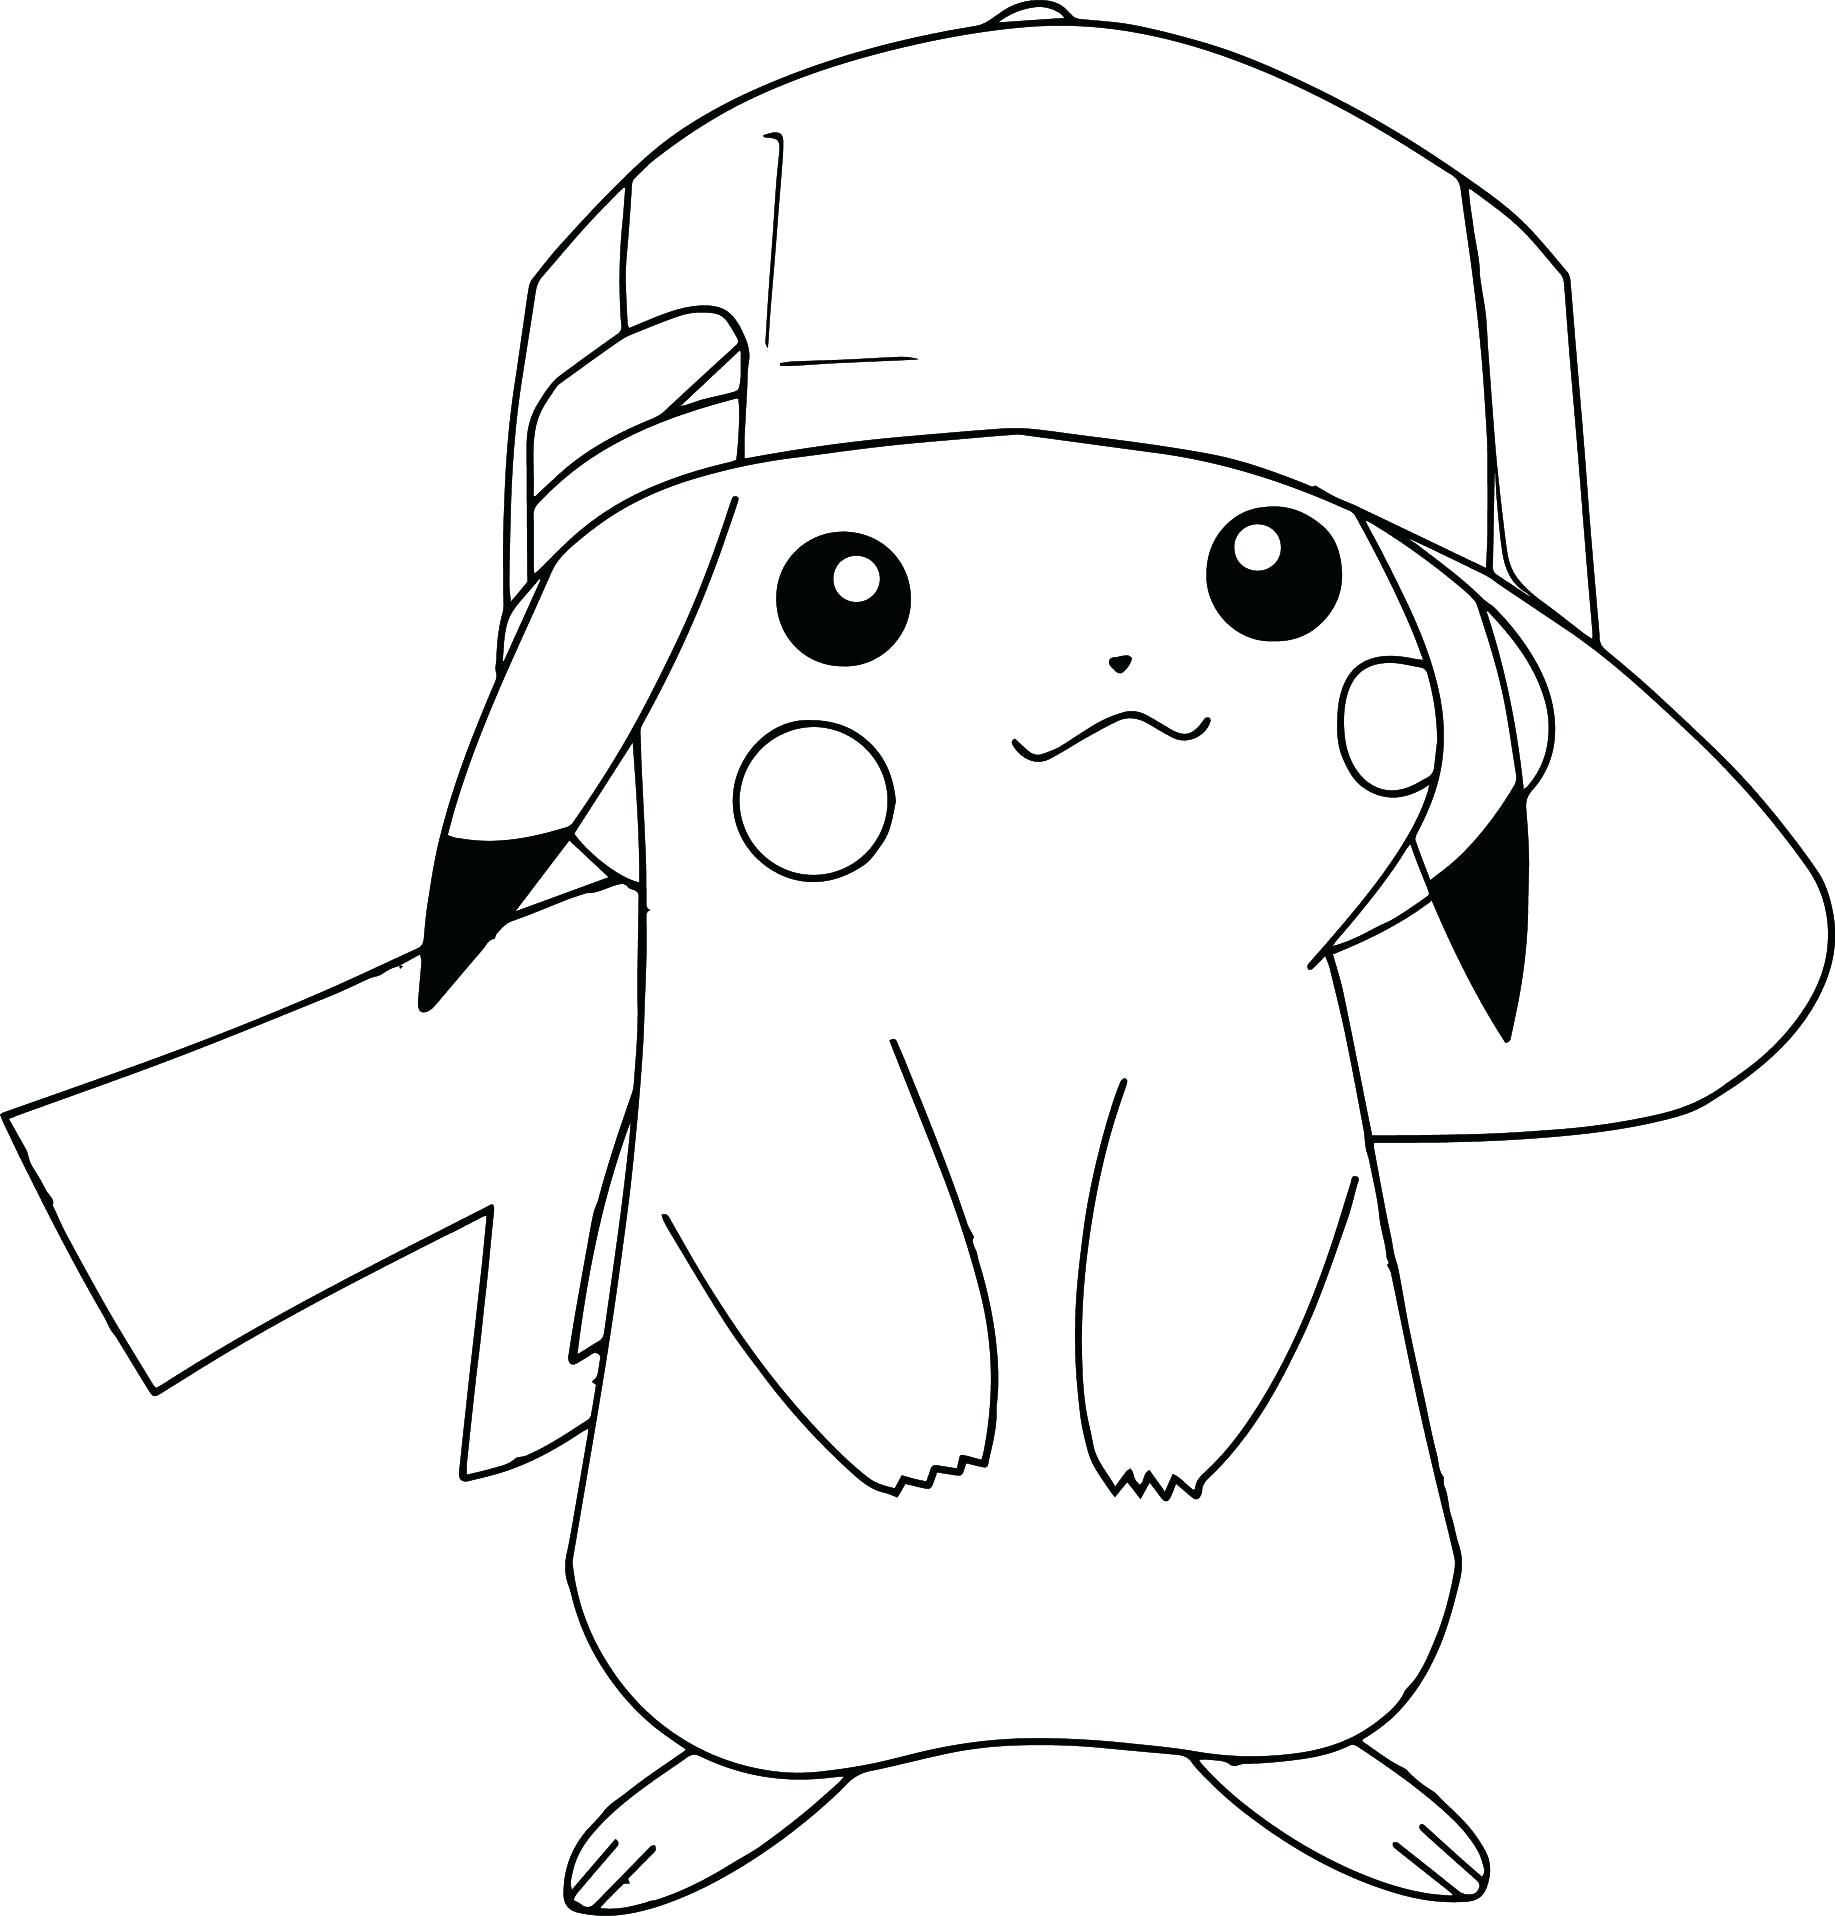 Tranh tô màu Pikachu và chiếc mũ